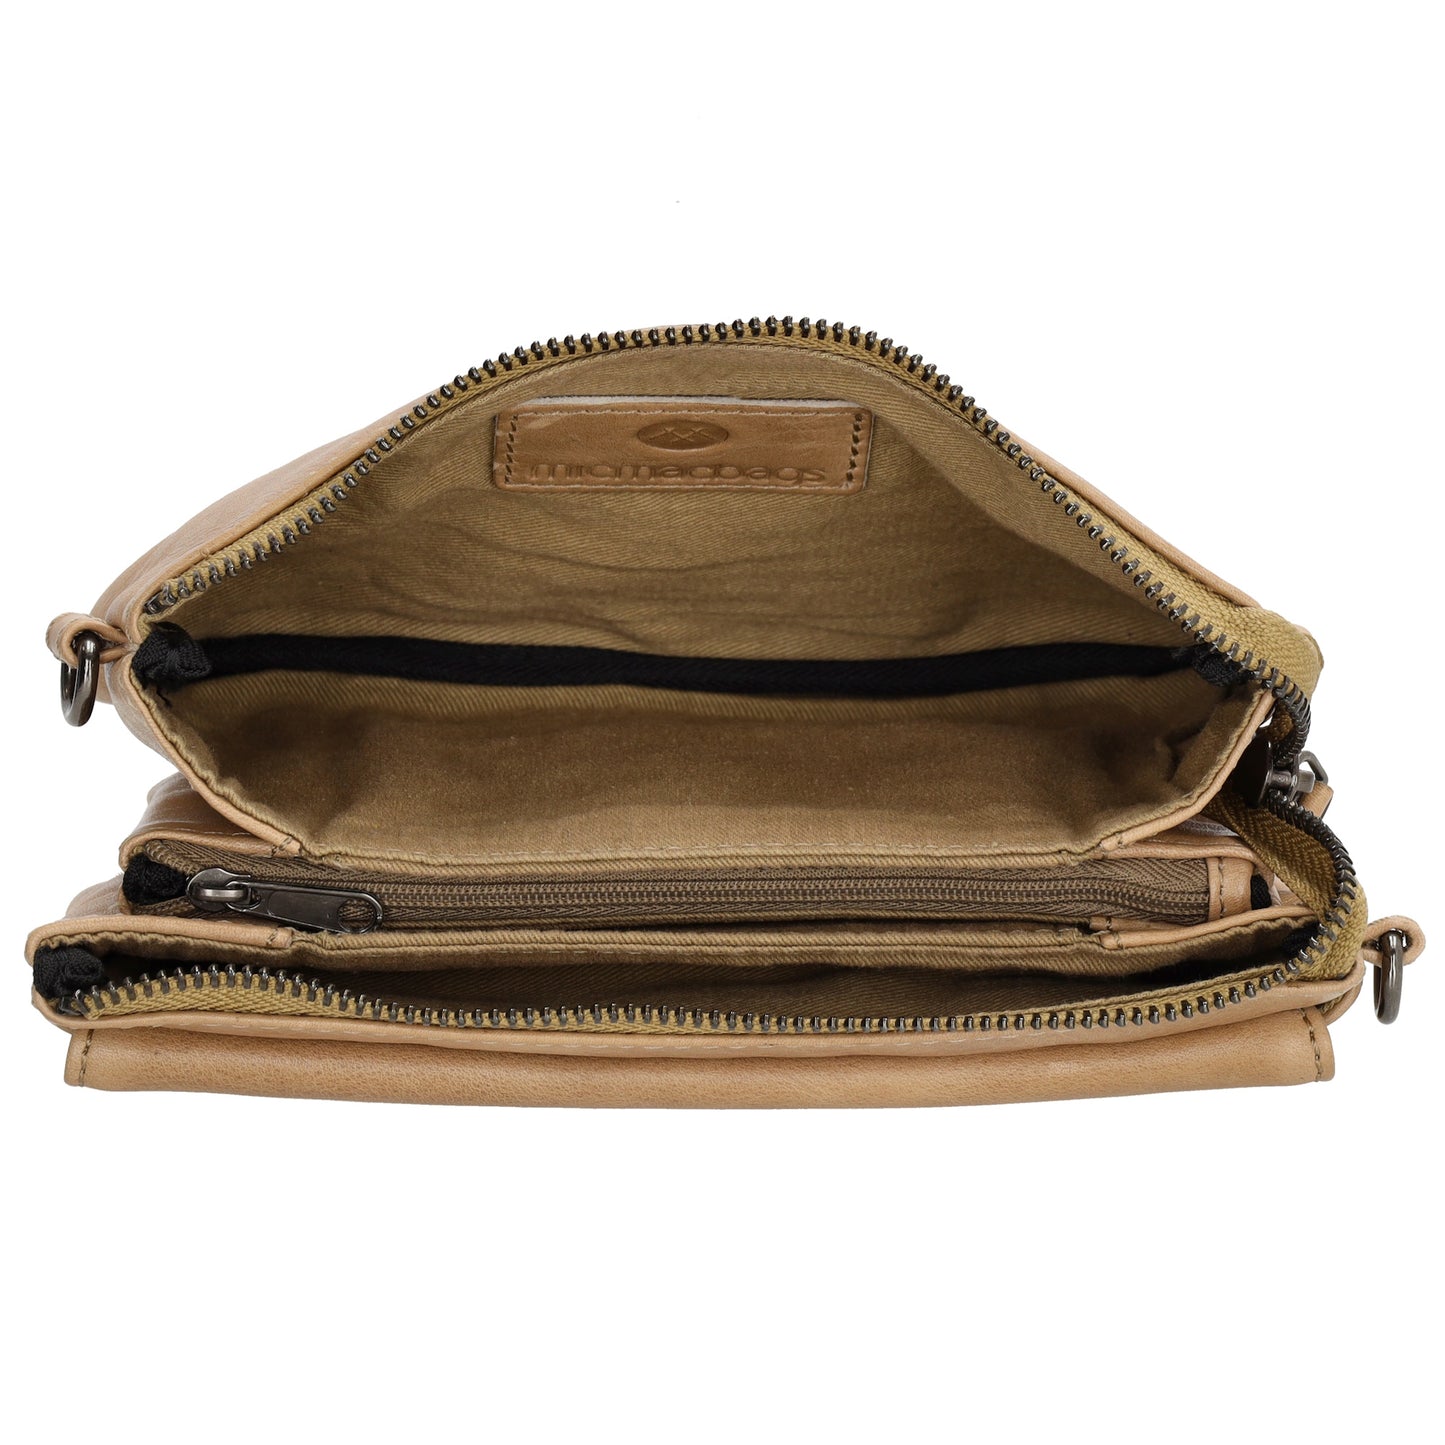 Umhängetasche| Mini Bag 20,5 x 12cm in Taupe aus Leder mit Vortasche